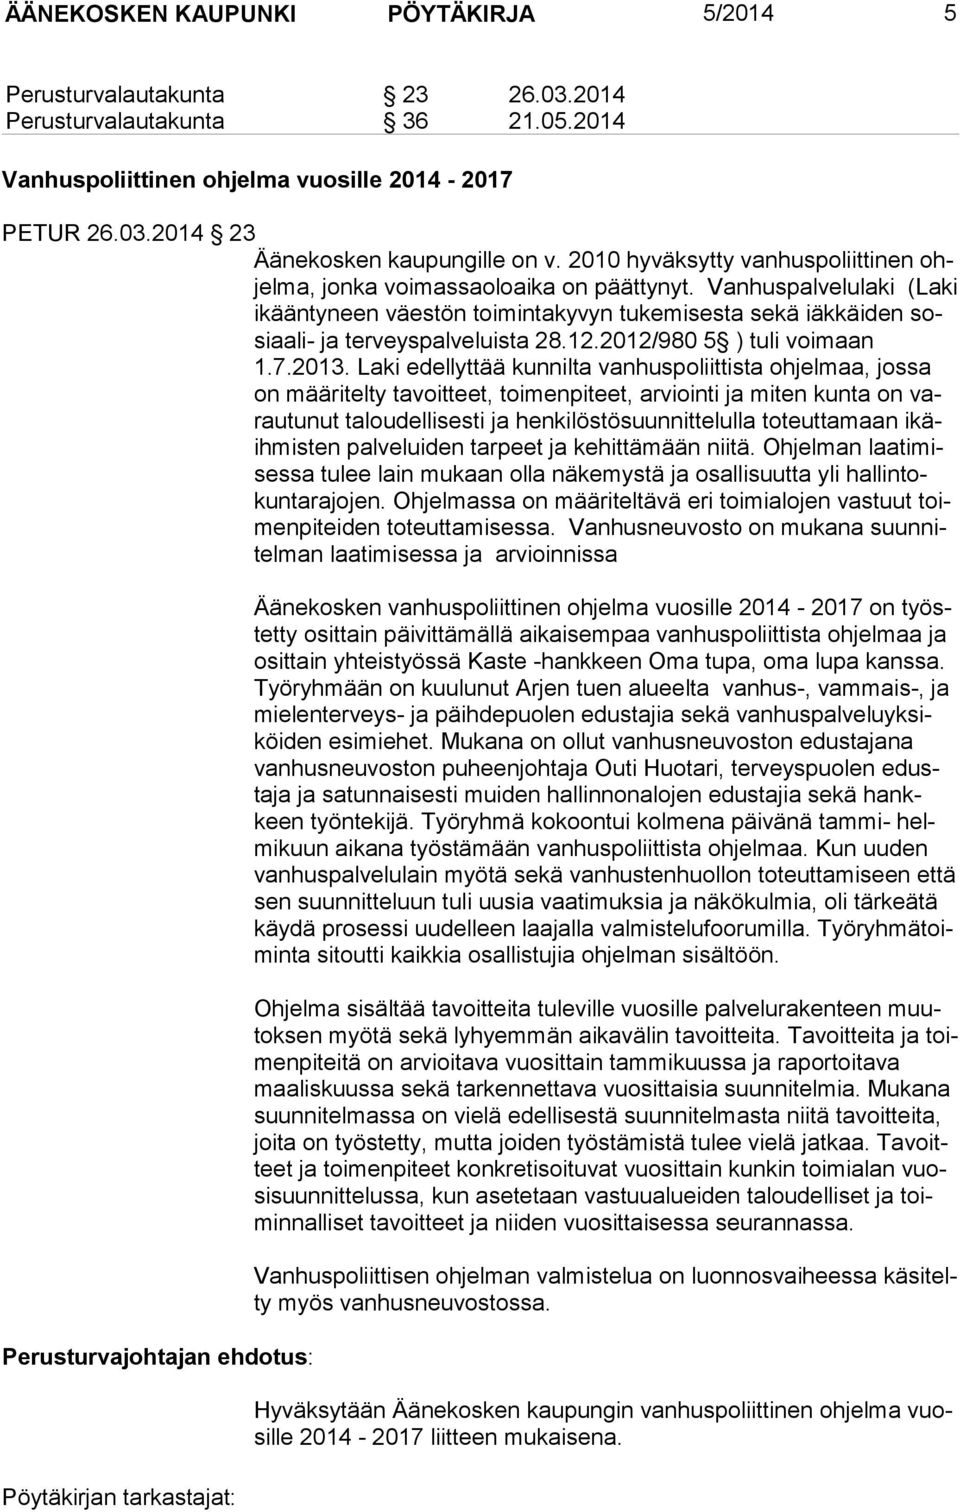 Vanhuspalvelulaki (Laki ikääntyneen väes tön toimintakyvyn tukemi sesta sekä iäkkäiden sosiaali- ja terveyspal veluista 28.12.2012/980 5 ) tuli voimaan 1.7.2013.